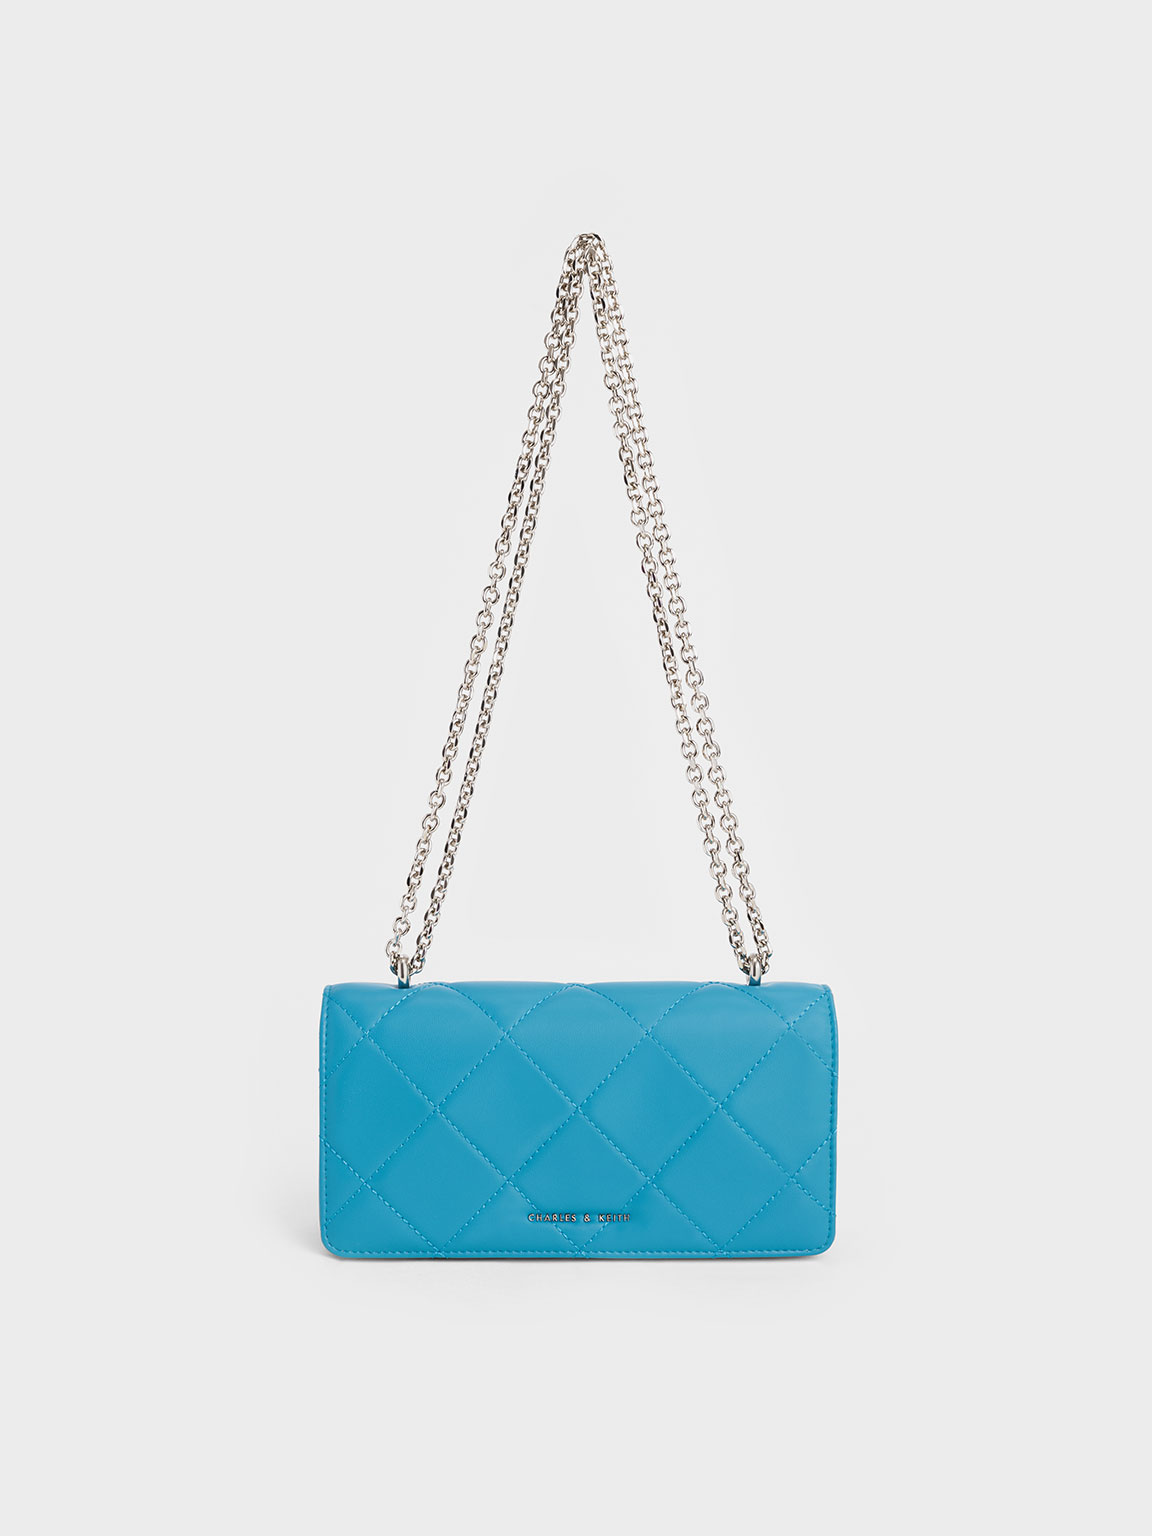 Chloé Chain Strap Handbags